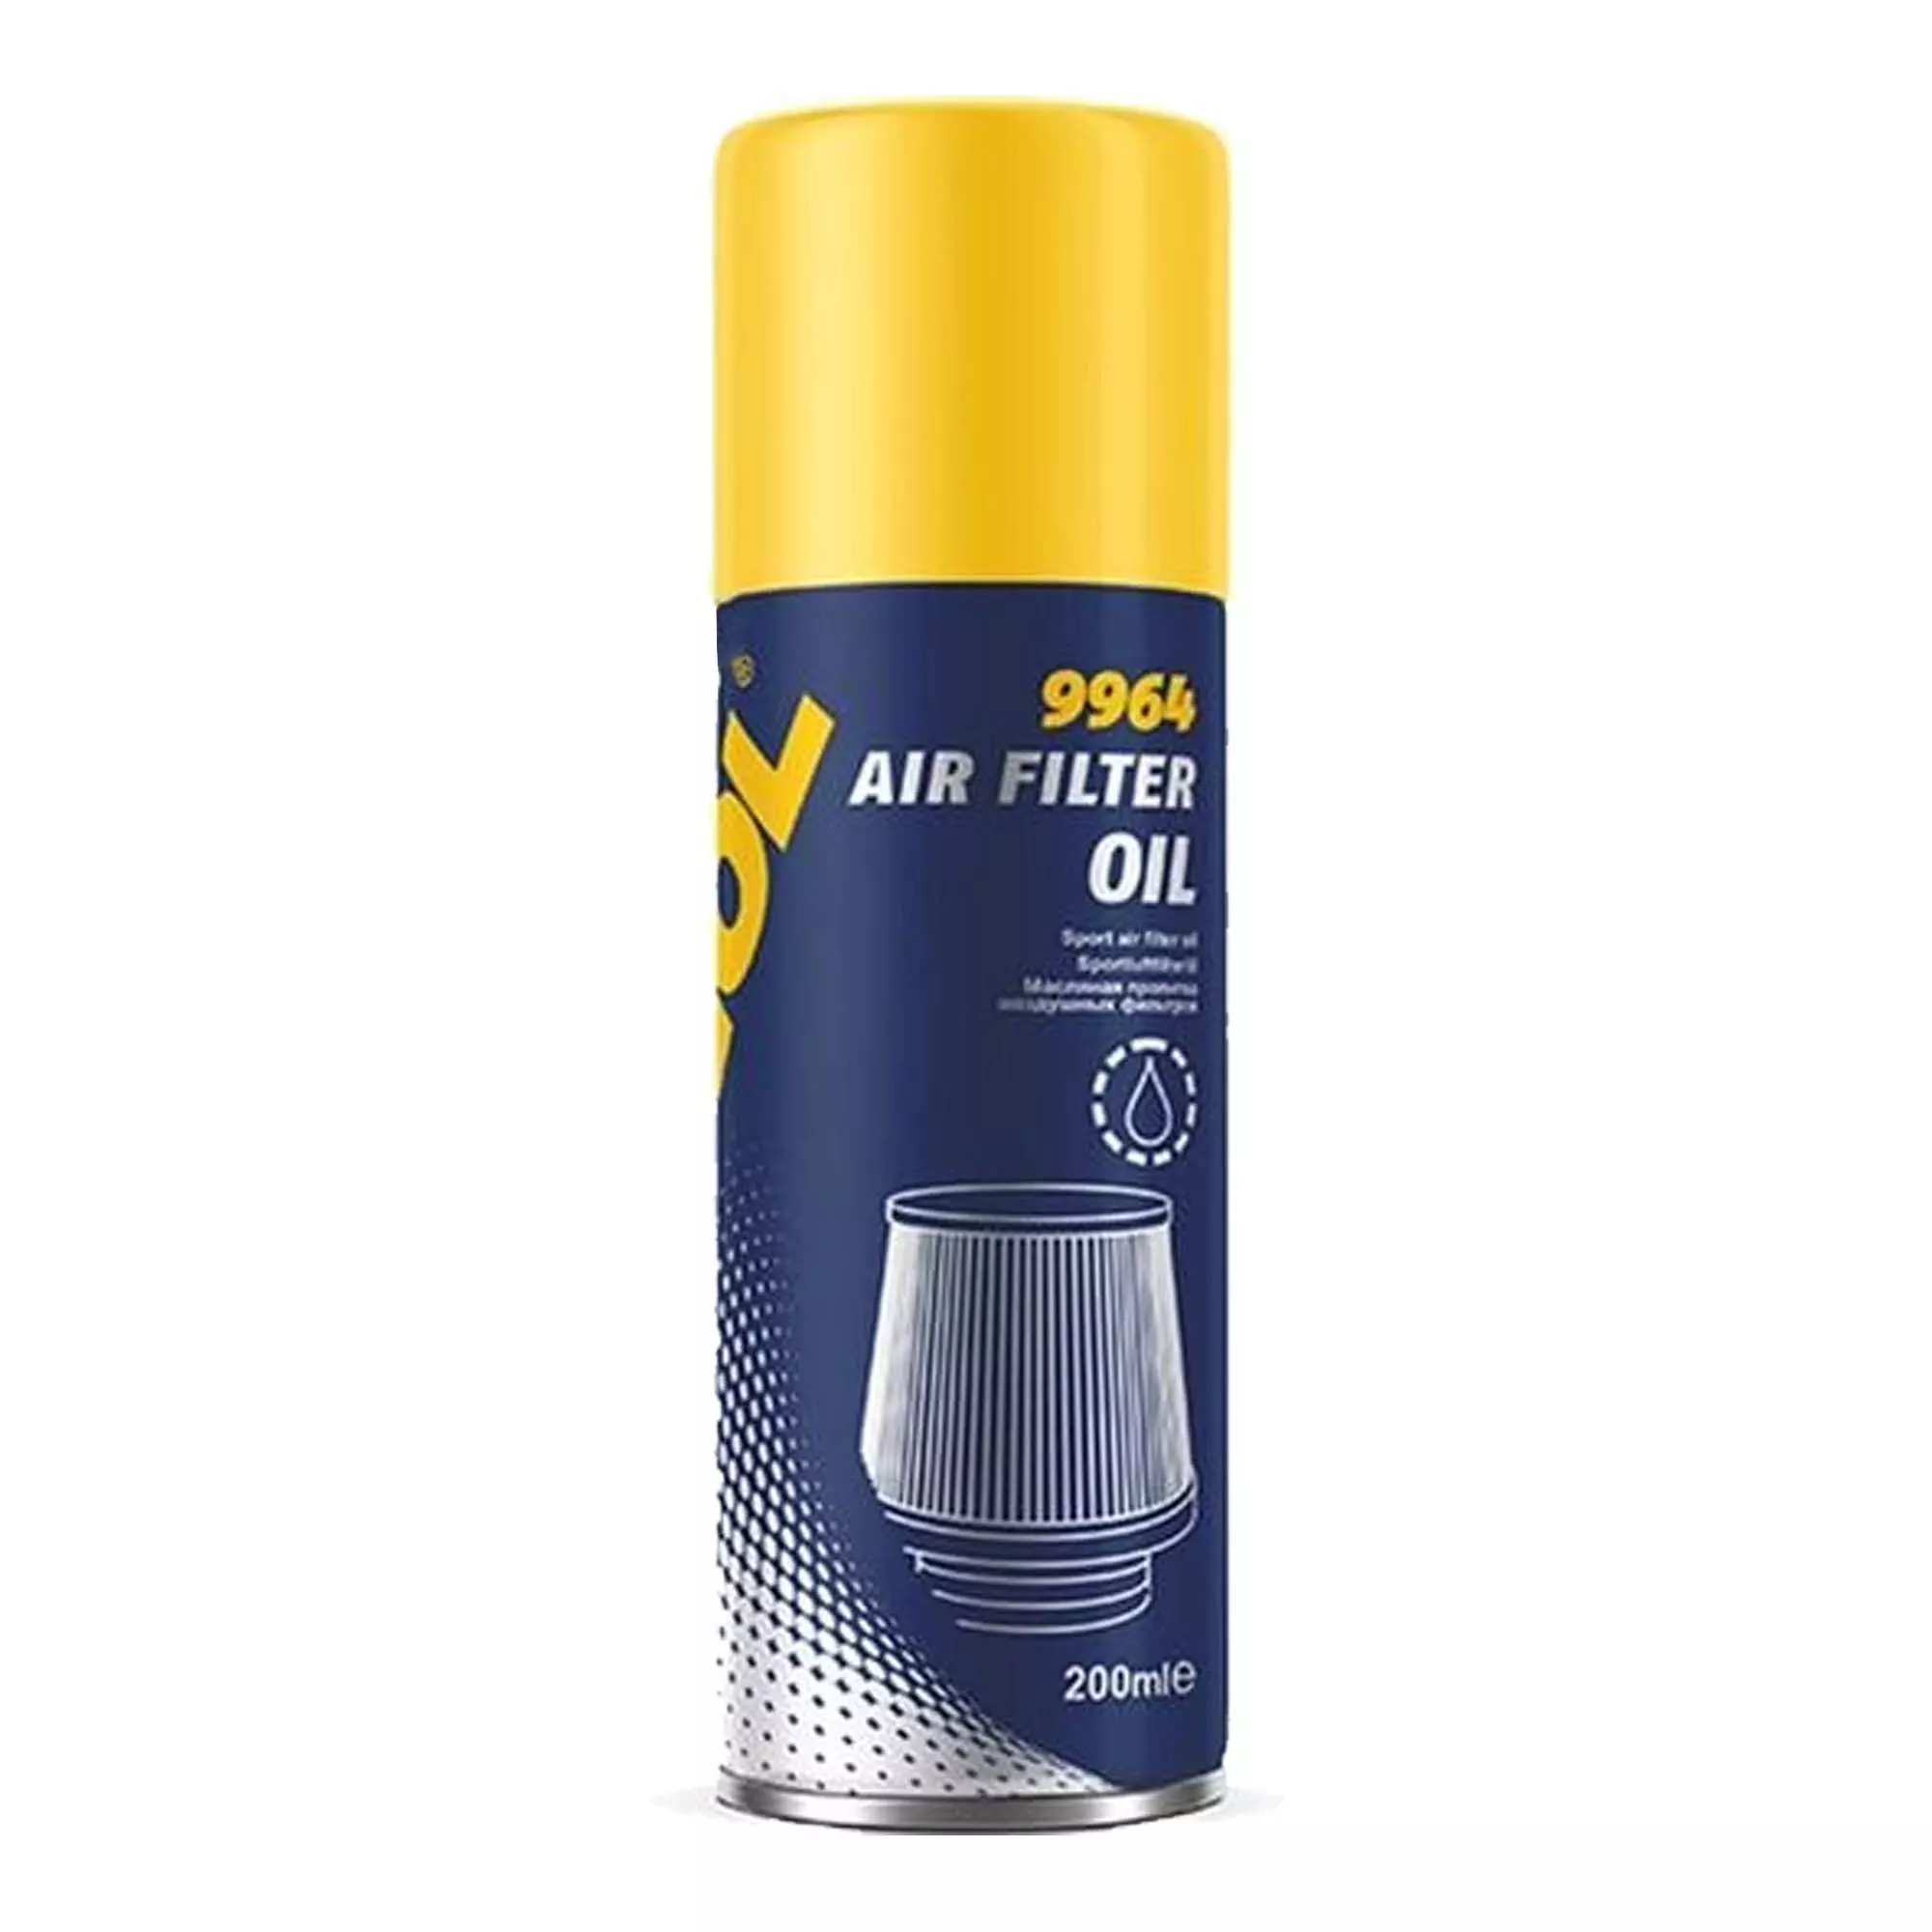 Масло для фильтра Mannol Air Filter Oil 200мл (9964)